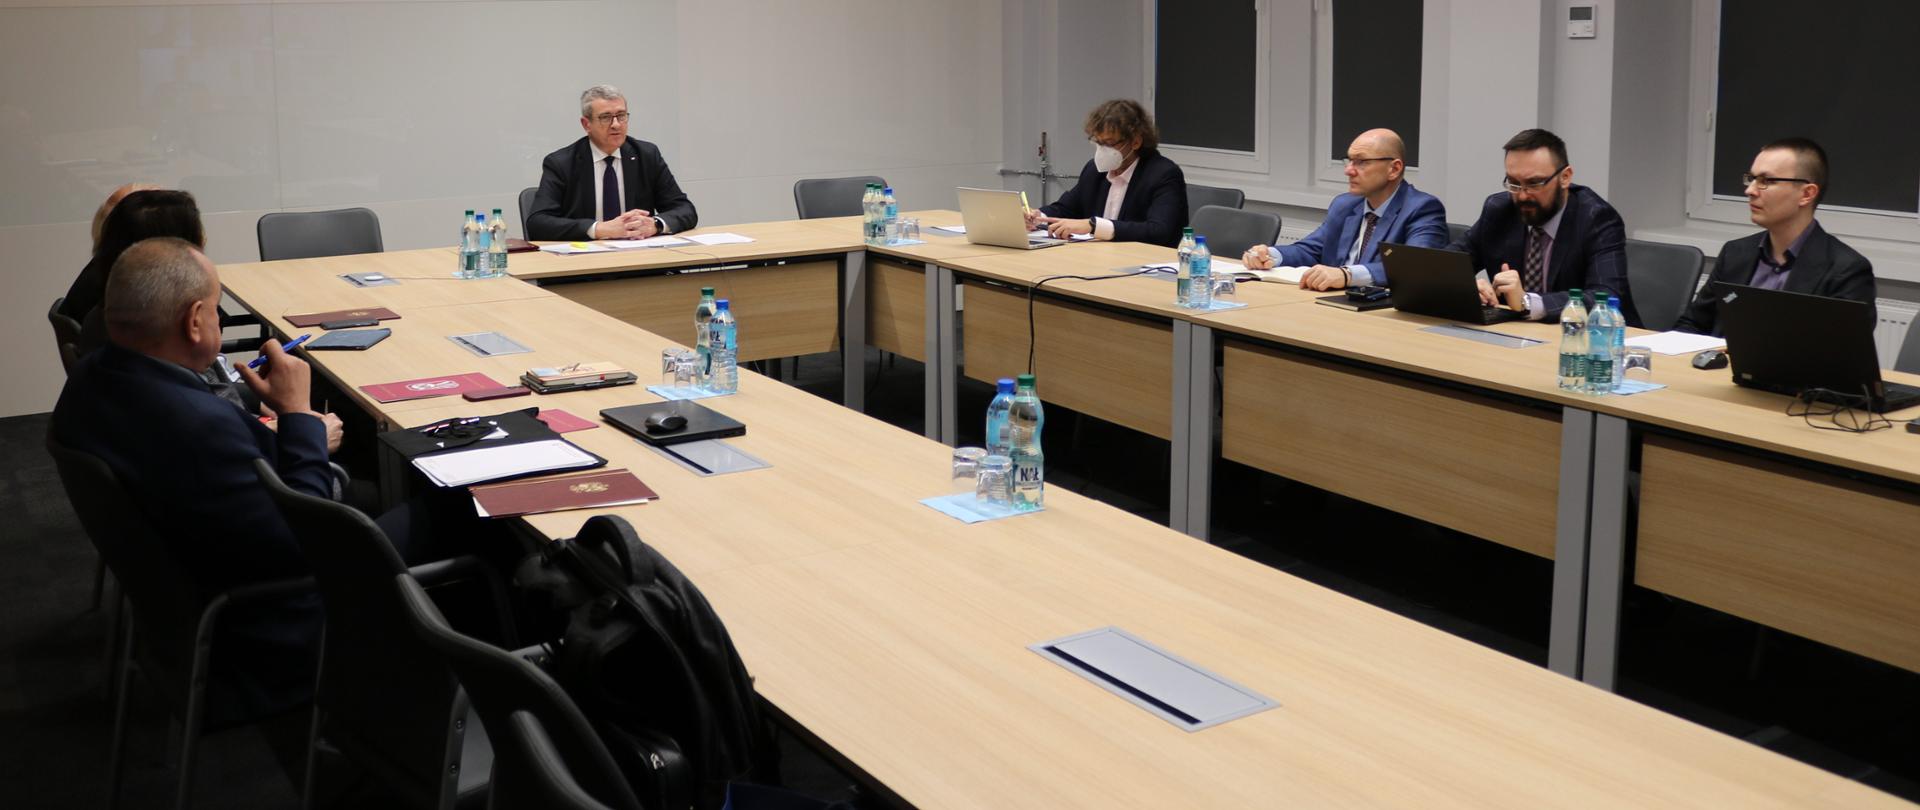 Posiedzenie Zespołu do spraw rozwiązań dotyczących wynagrodzeń na uczelniach publicznych z udziałem wiceministra Wojciecha Murdzka, wiceminister Wojciech Murdzek siedzi przy stole z innymi uczestnikami posiedzenia.
